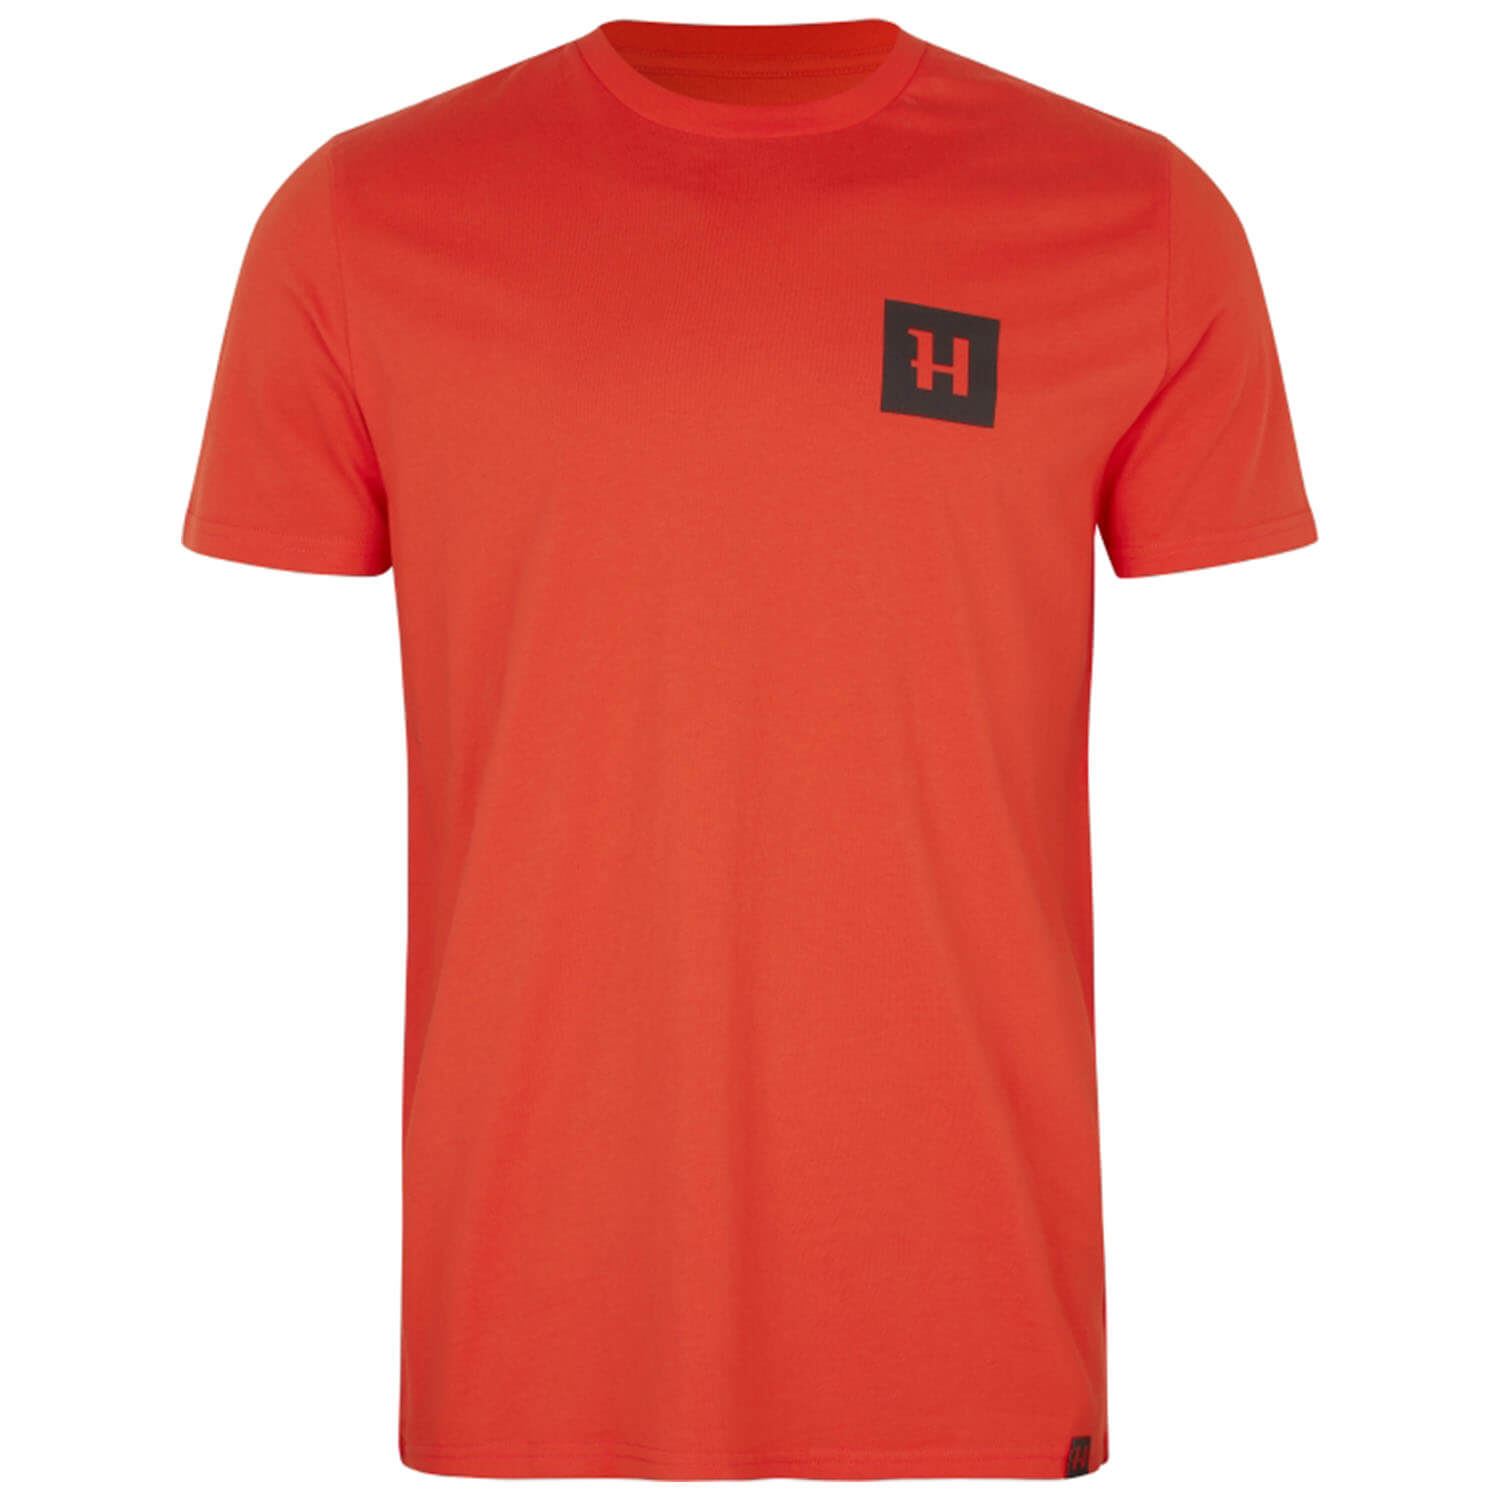 Härkila T-Shirt Frej (Orange) - Neu im Shop